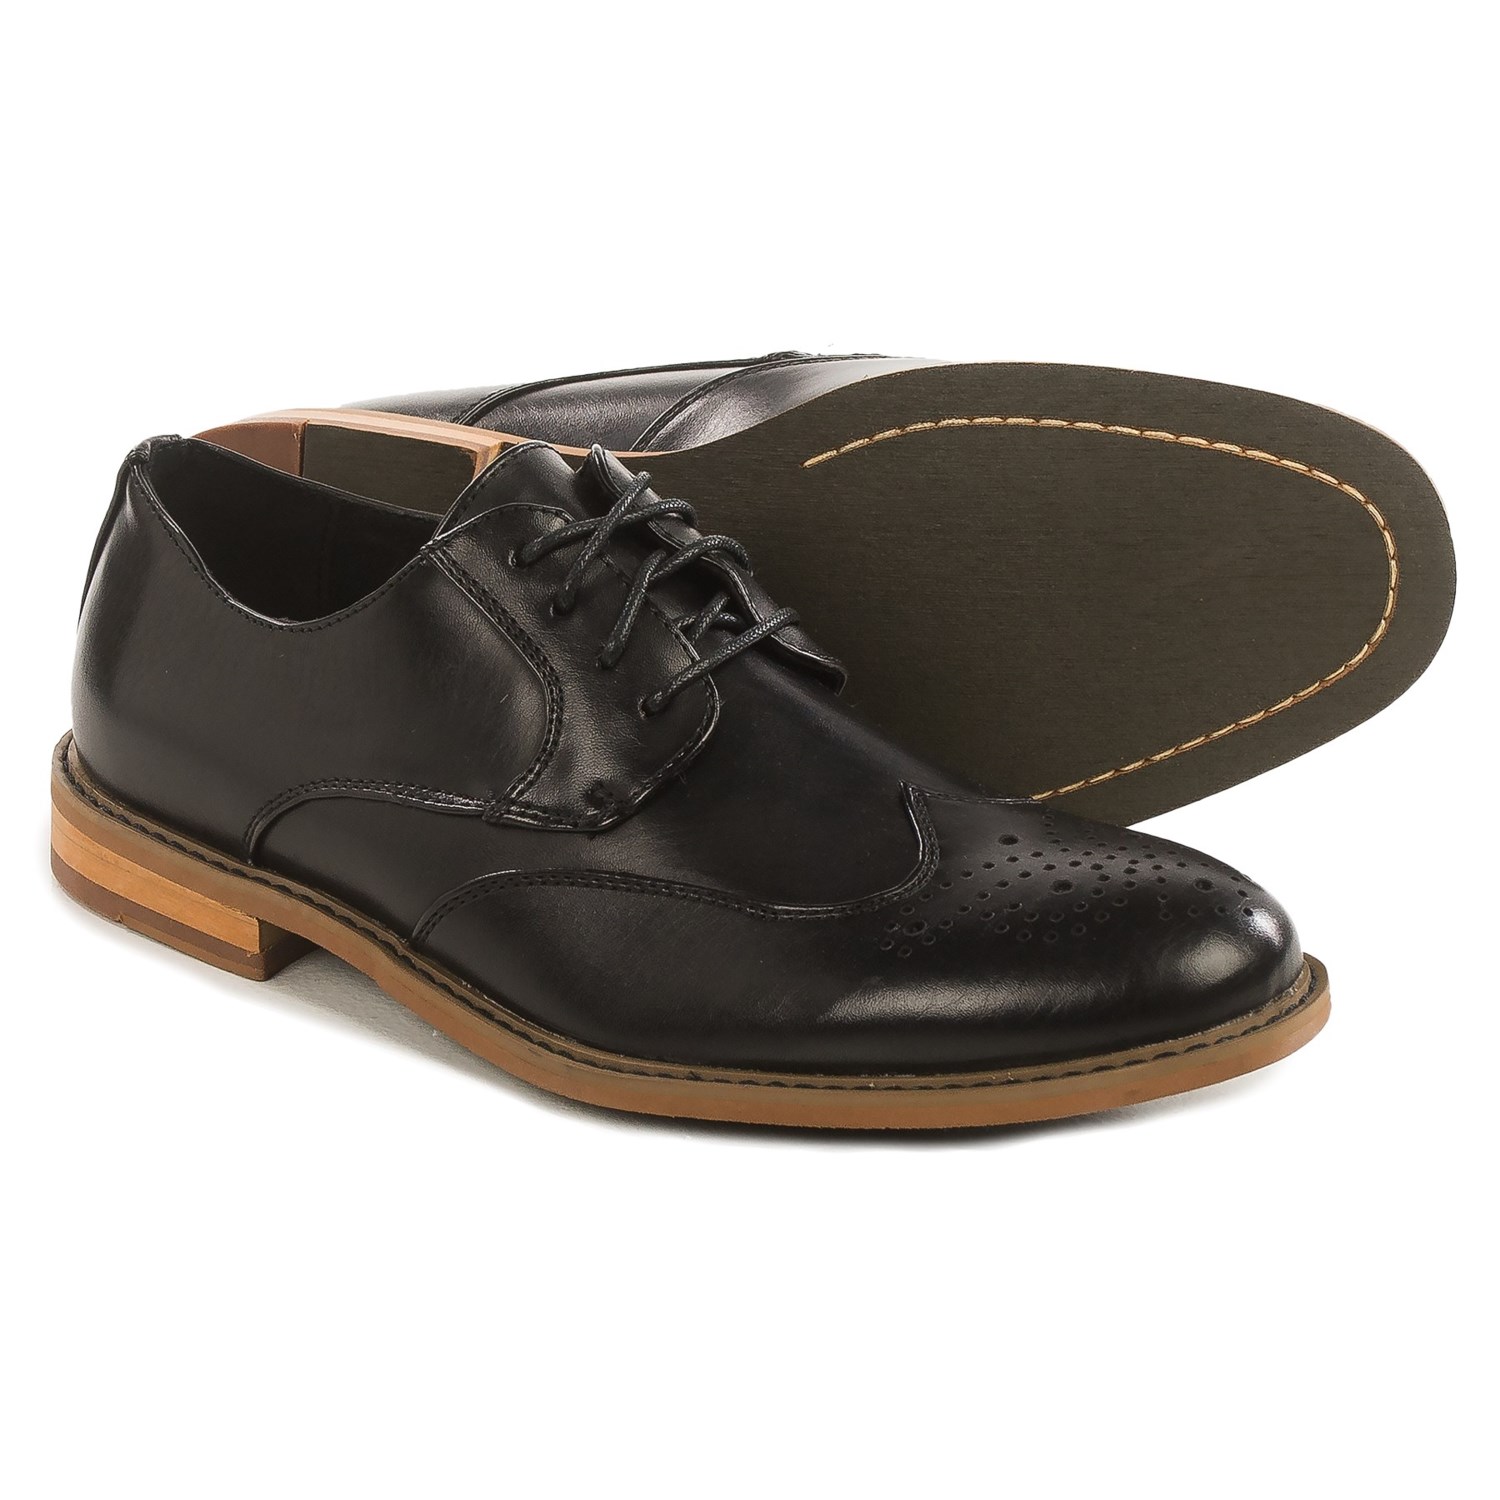 Deer Stags Hampden Wingtip Oxford Shoes (For Men) - Save 65%